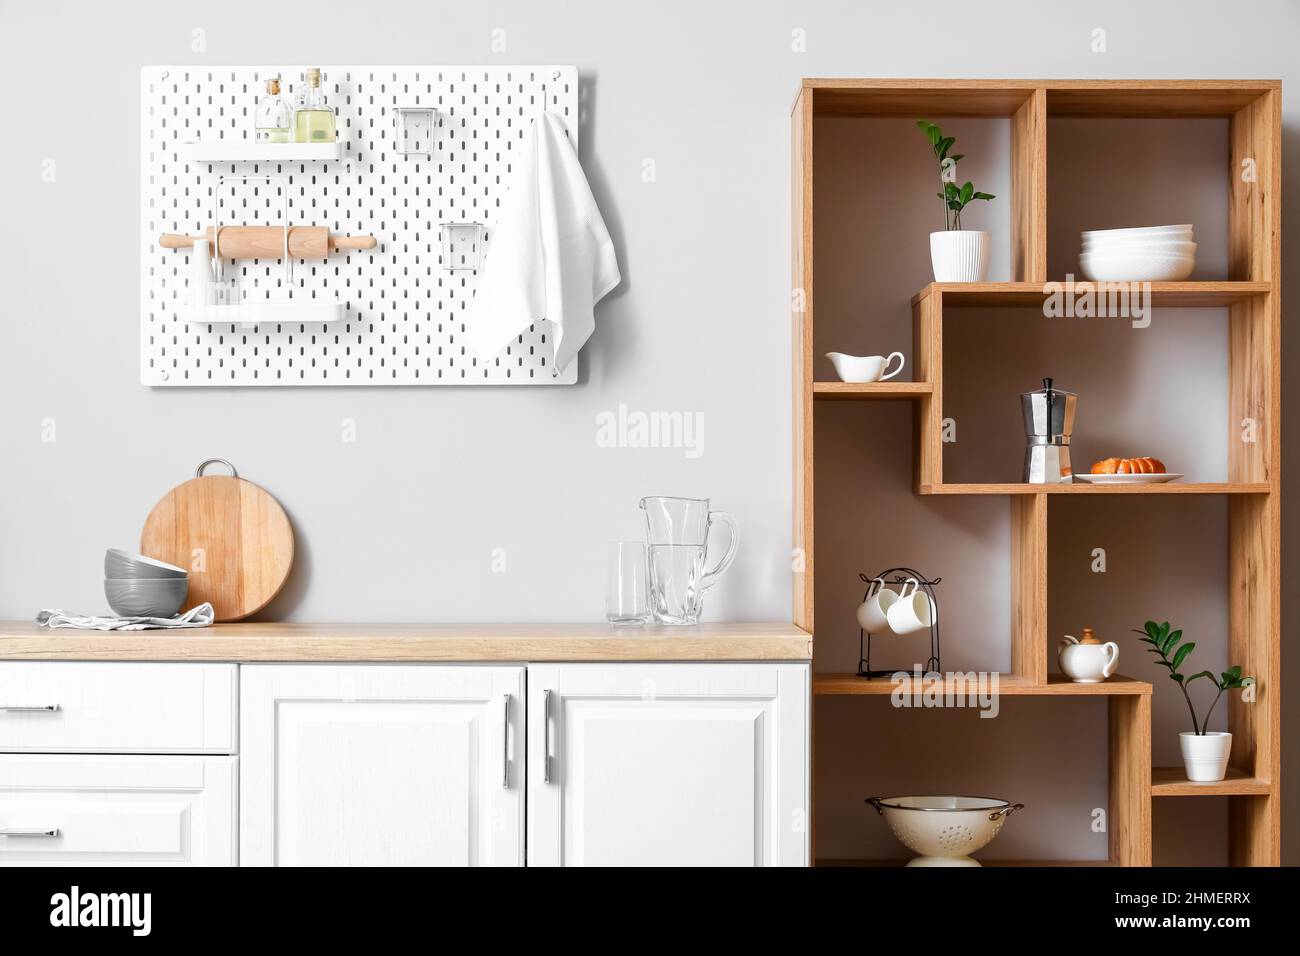 Innenraum der hellen Küche mit Holzregal und Pegboard Stockfotografie -  Alamy